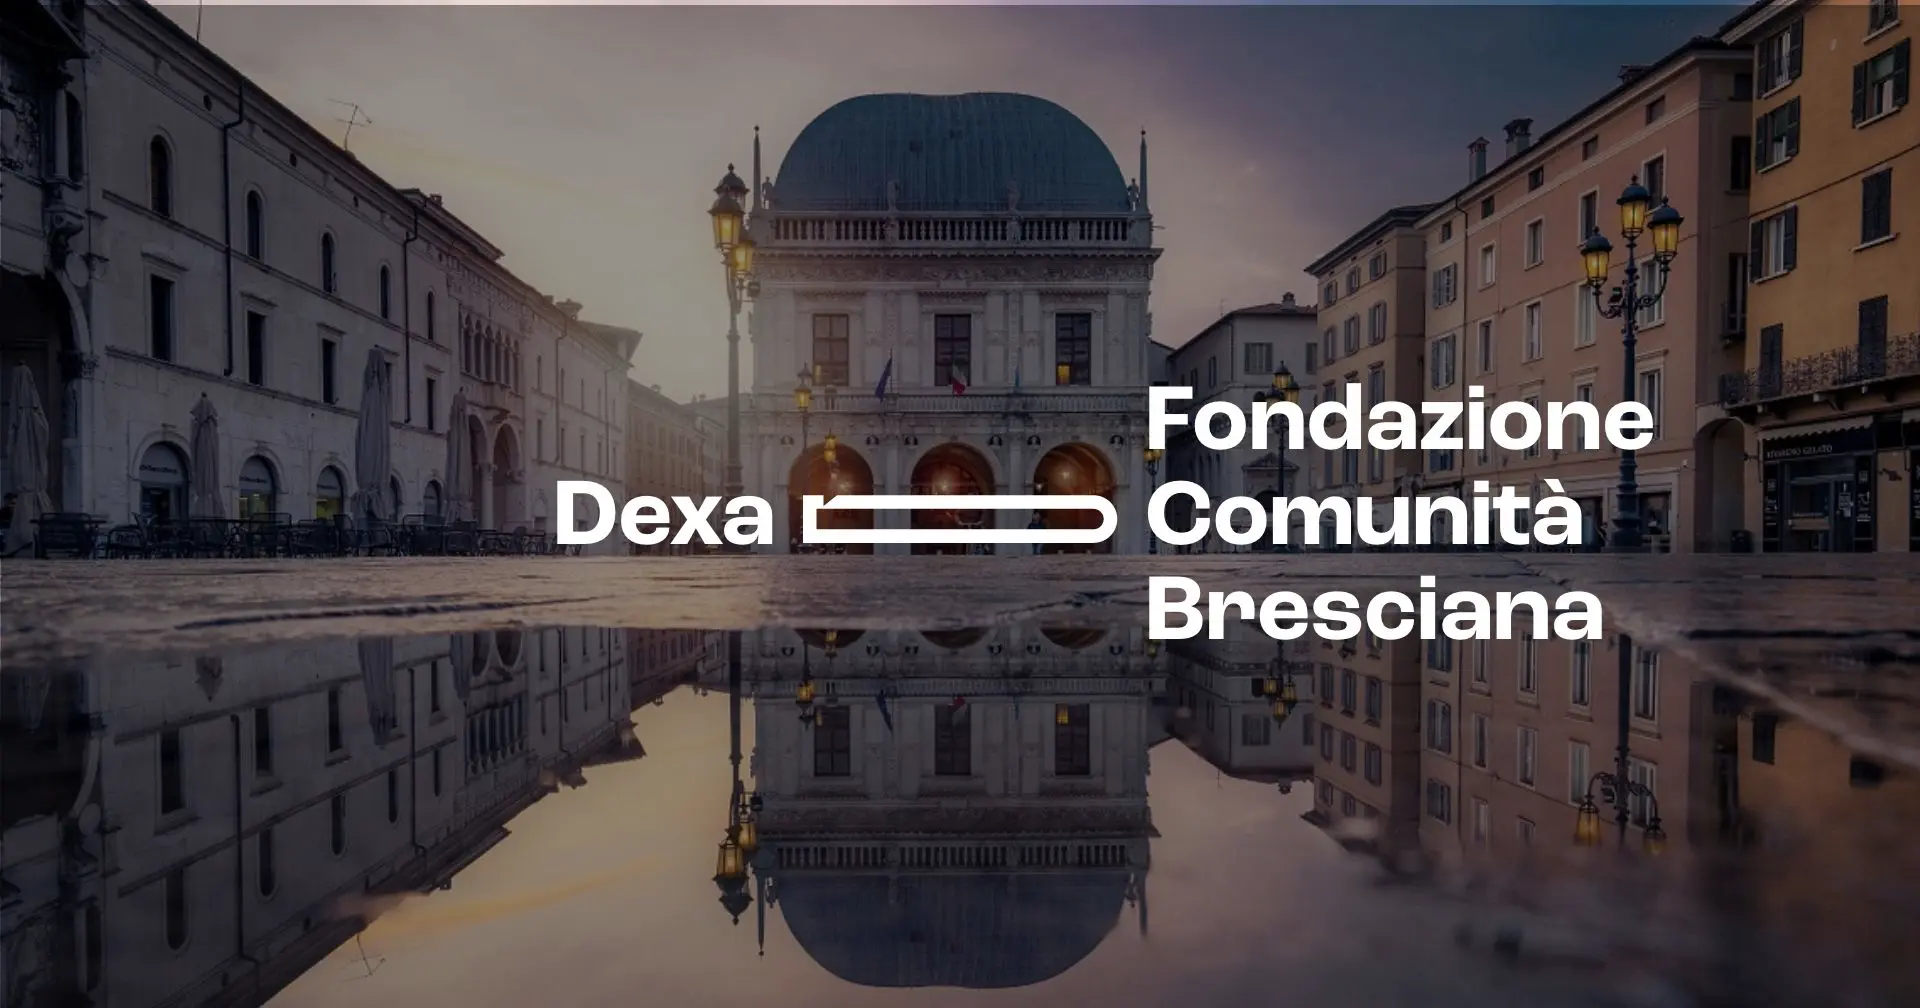 Rinnovare l’immagine dalle fondamenta: nuovo logo per Fondazione della Comunità Bresciana.